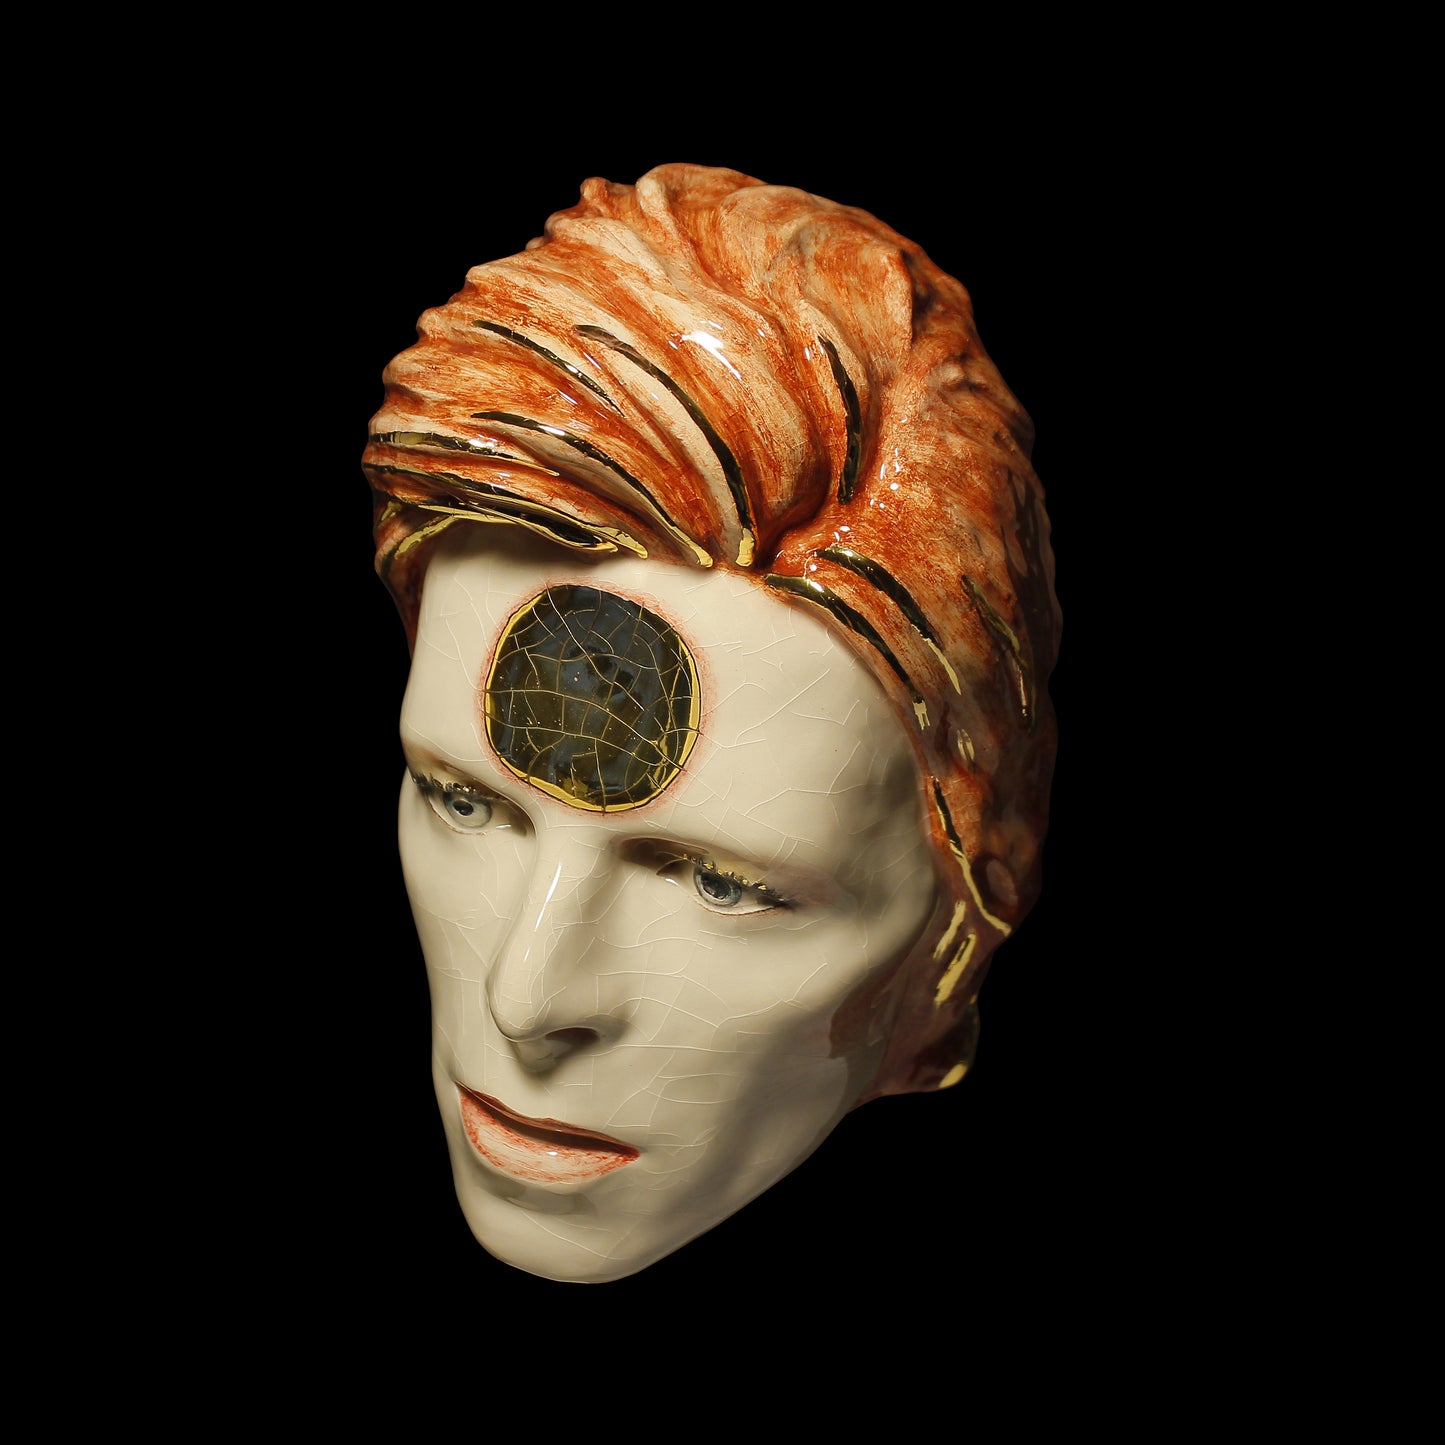 David Bowie - 'Ziggy Stardust' Mask